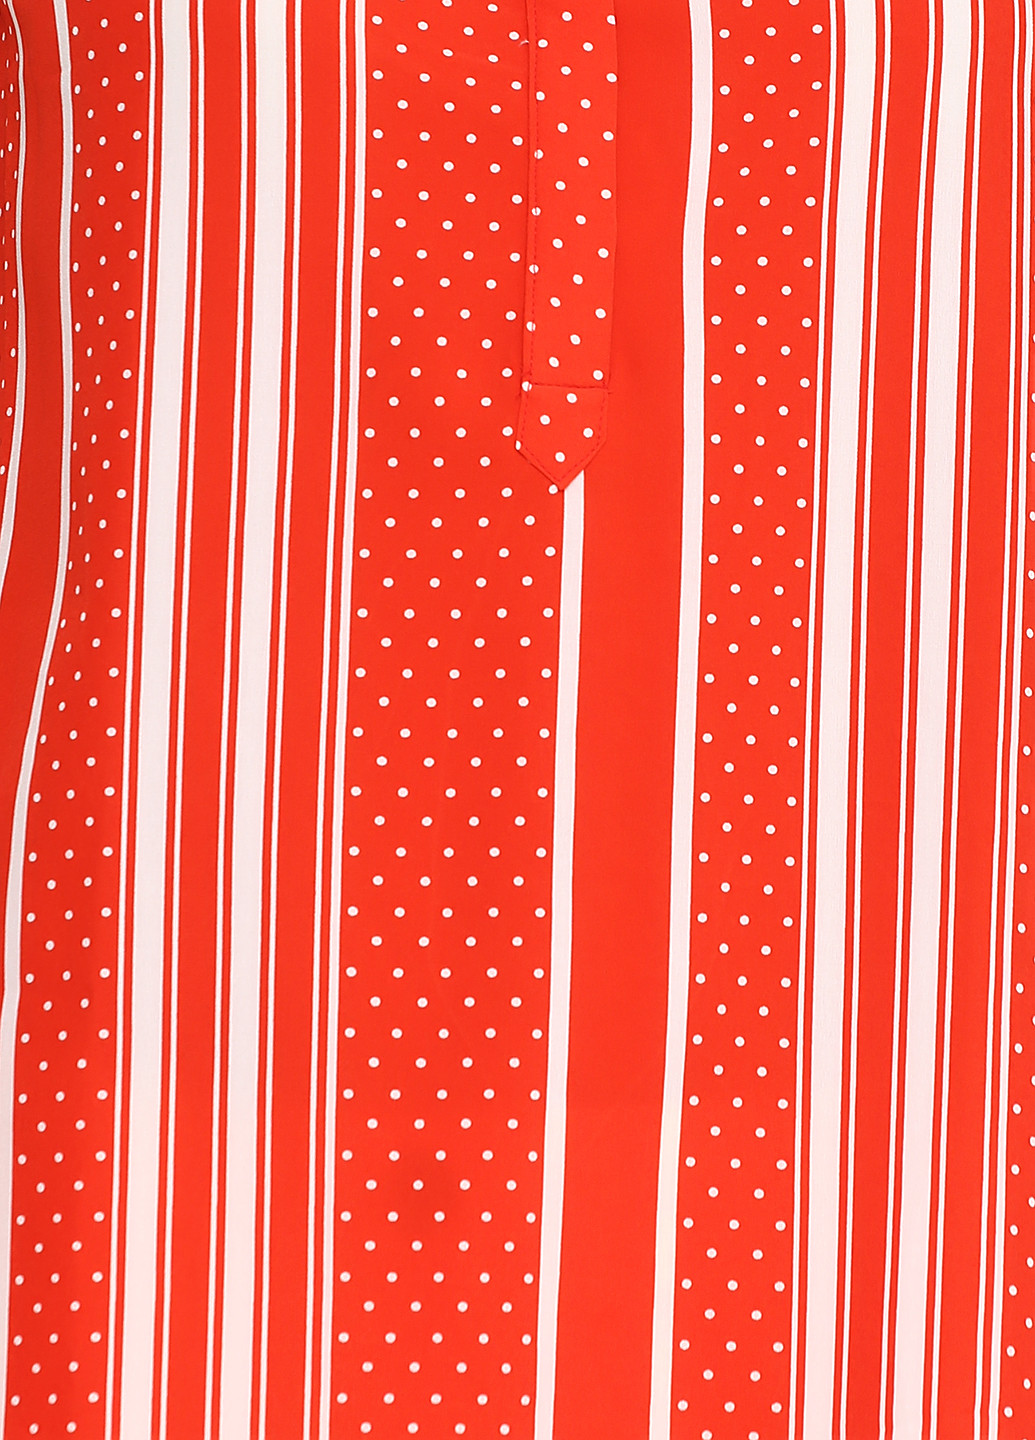 Красная летняя блуза Friendtex